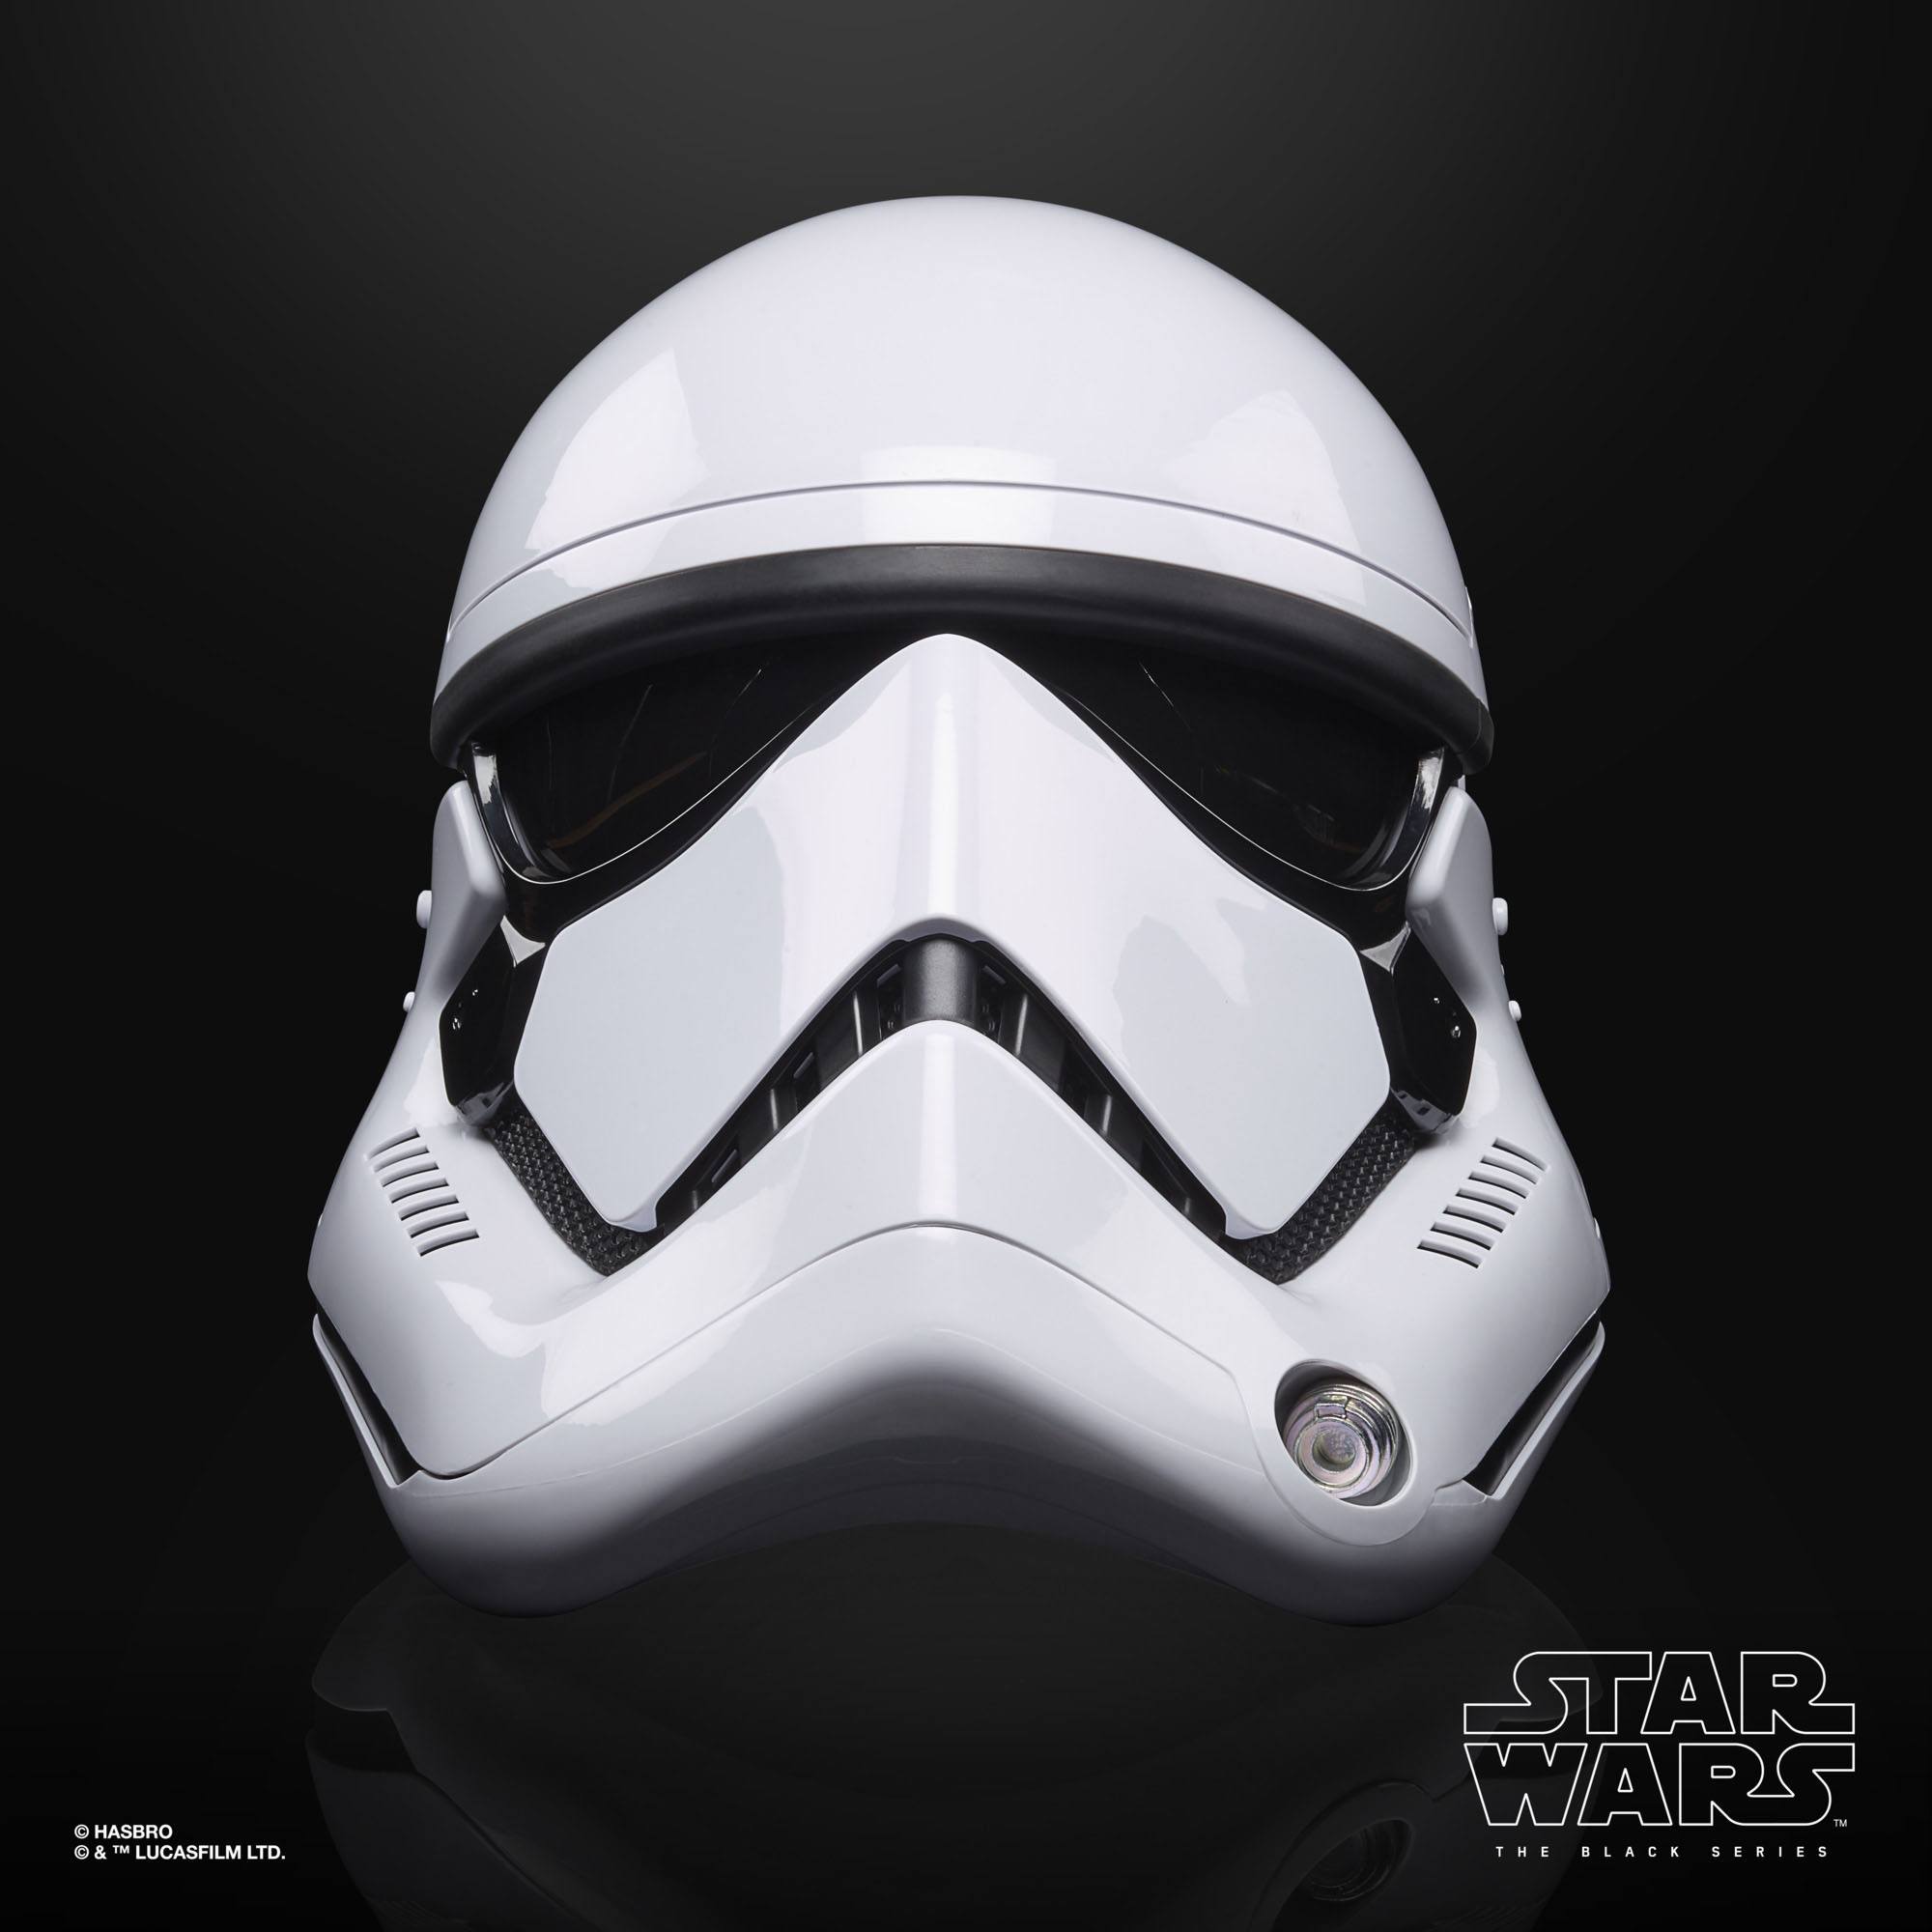 Star Wars Episode VIII Black Series Elektronischer Helm First Order Stormtrooper F00125L00  5010993737093 